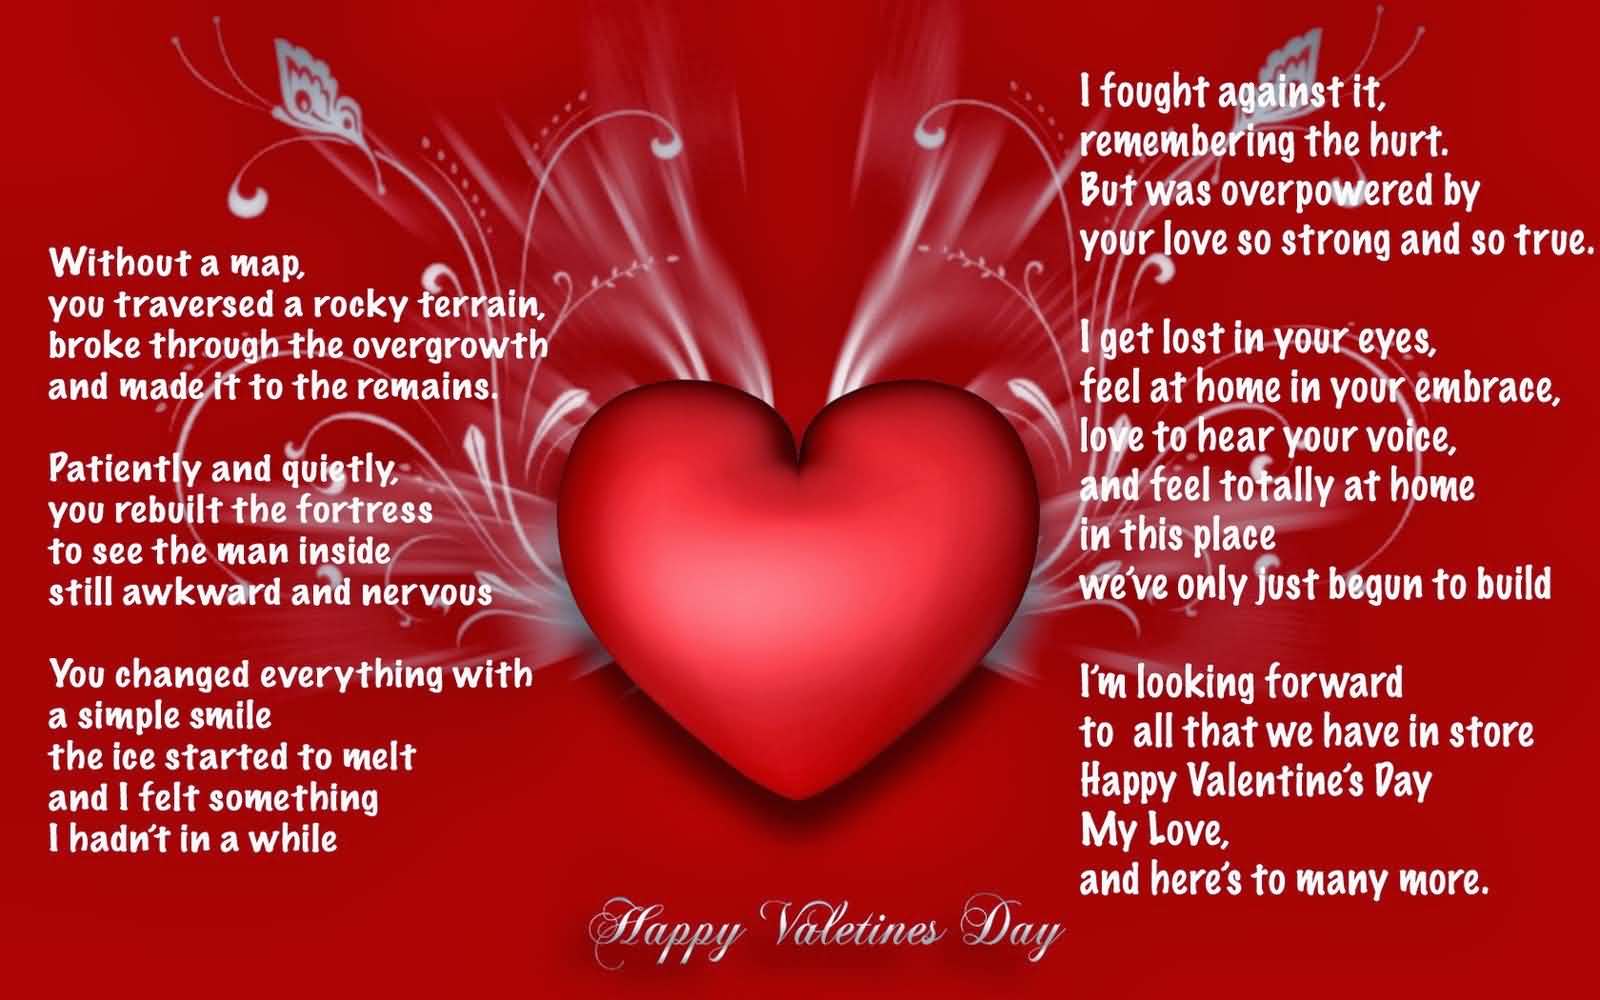 Happy Valentine’s Day card for boyfriend